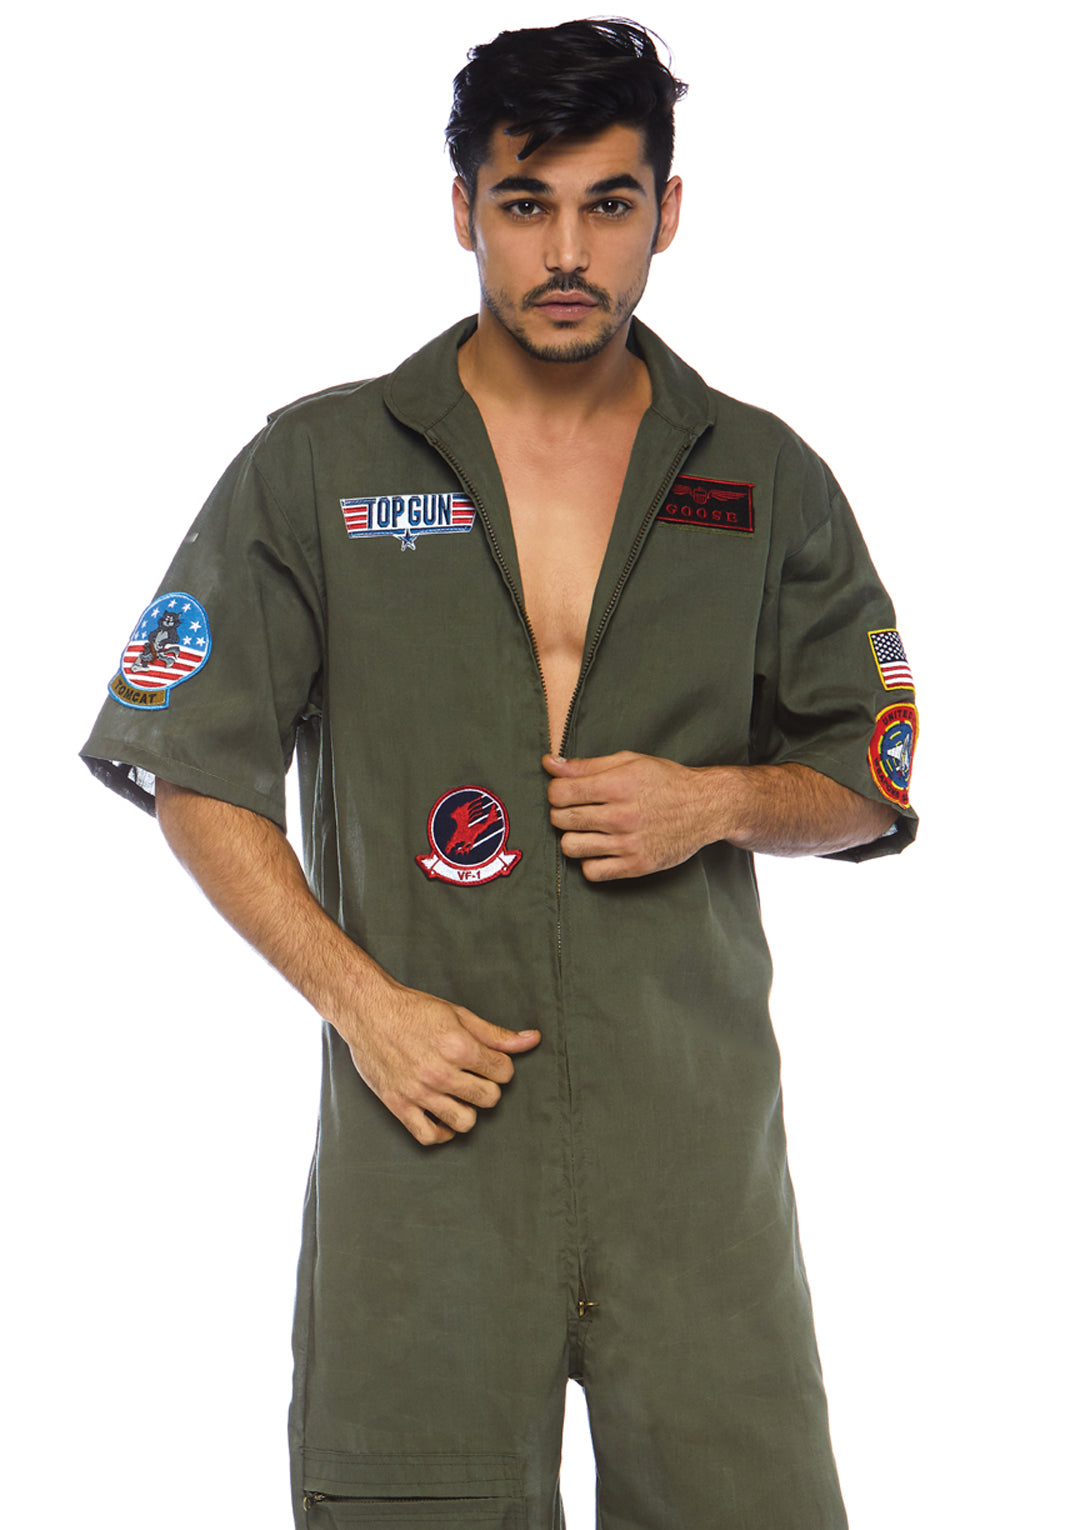 Top Gun men's short flight suit